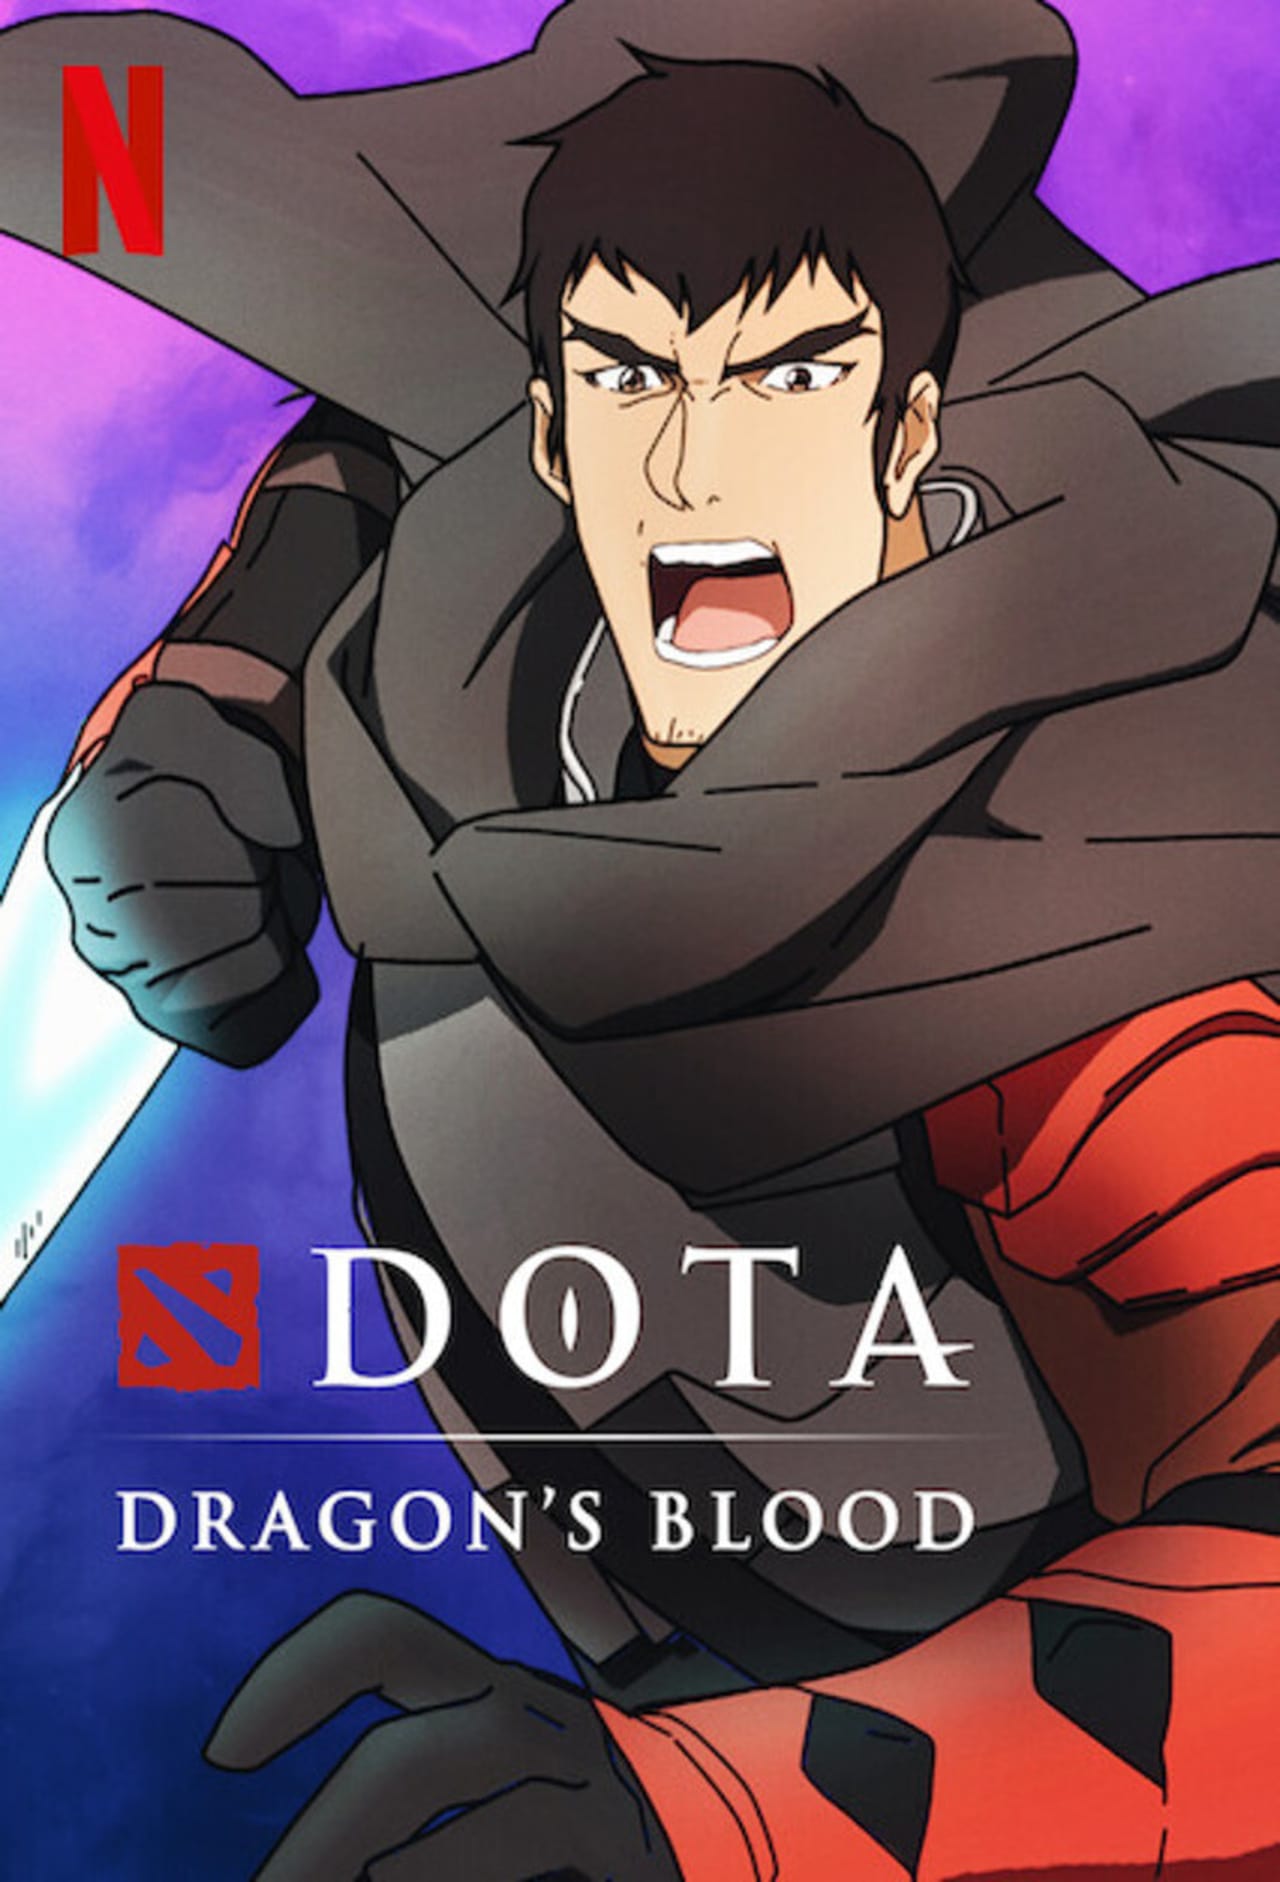 DOTA: Dragon's Blood (season 1)